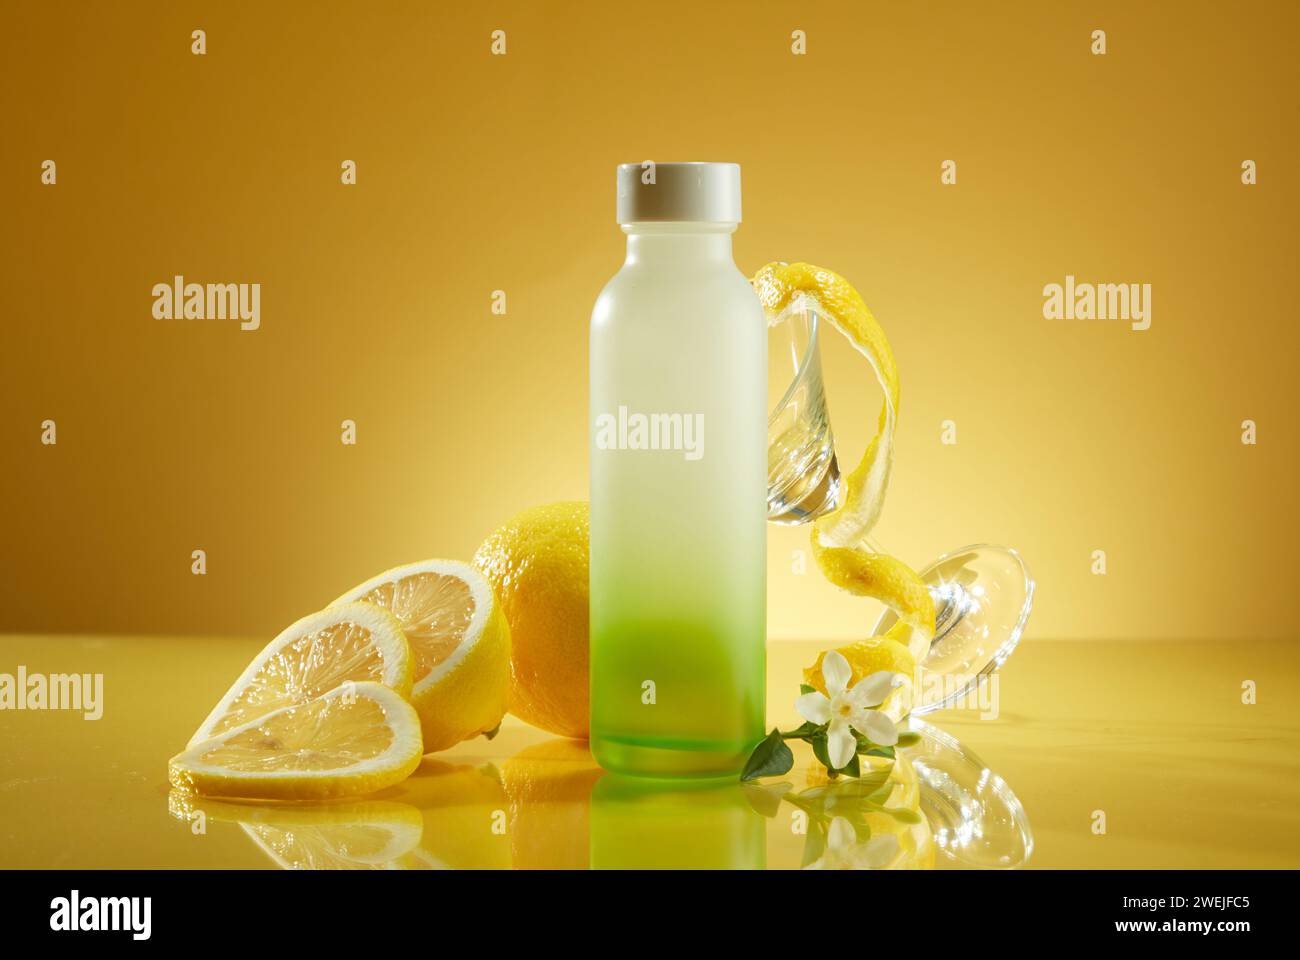 Vue de face bouteille en verre sans marque avec citron frais et tasse en verre sur fond jaune. Emballage pour produits à boire avec arôme de citron frais pour un r Banque D'Images